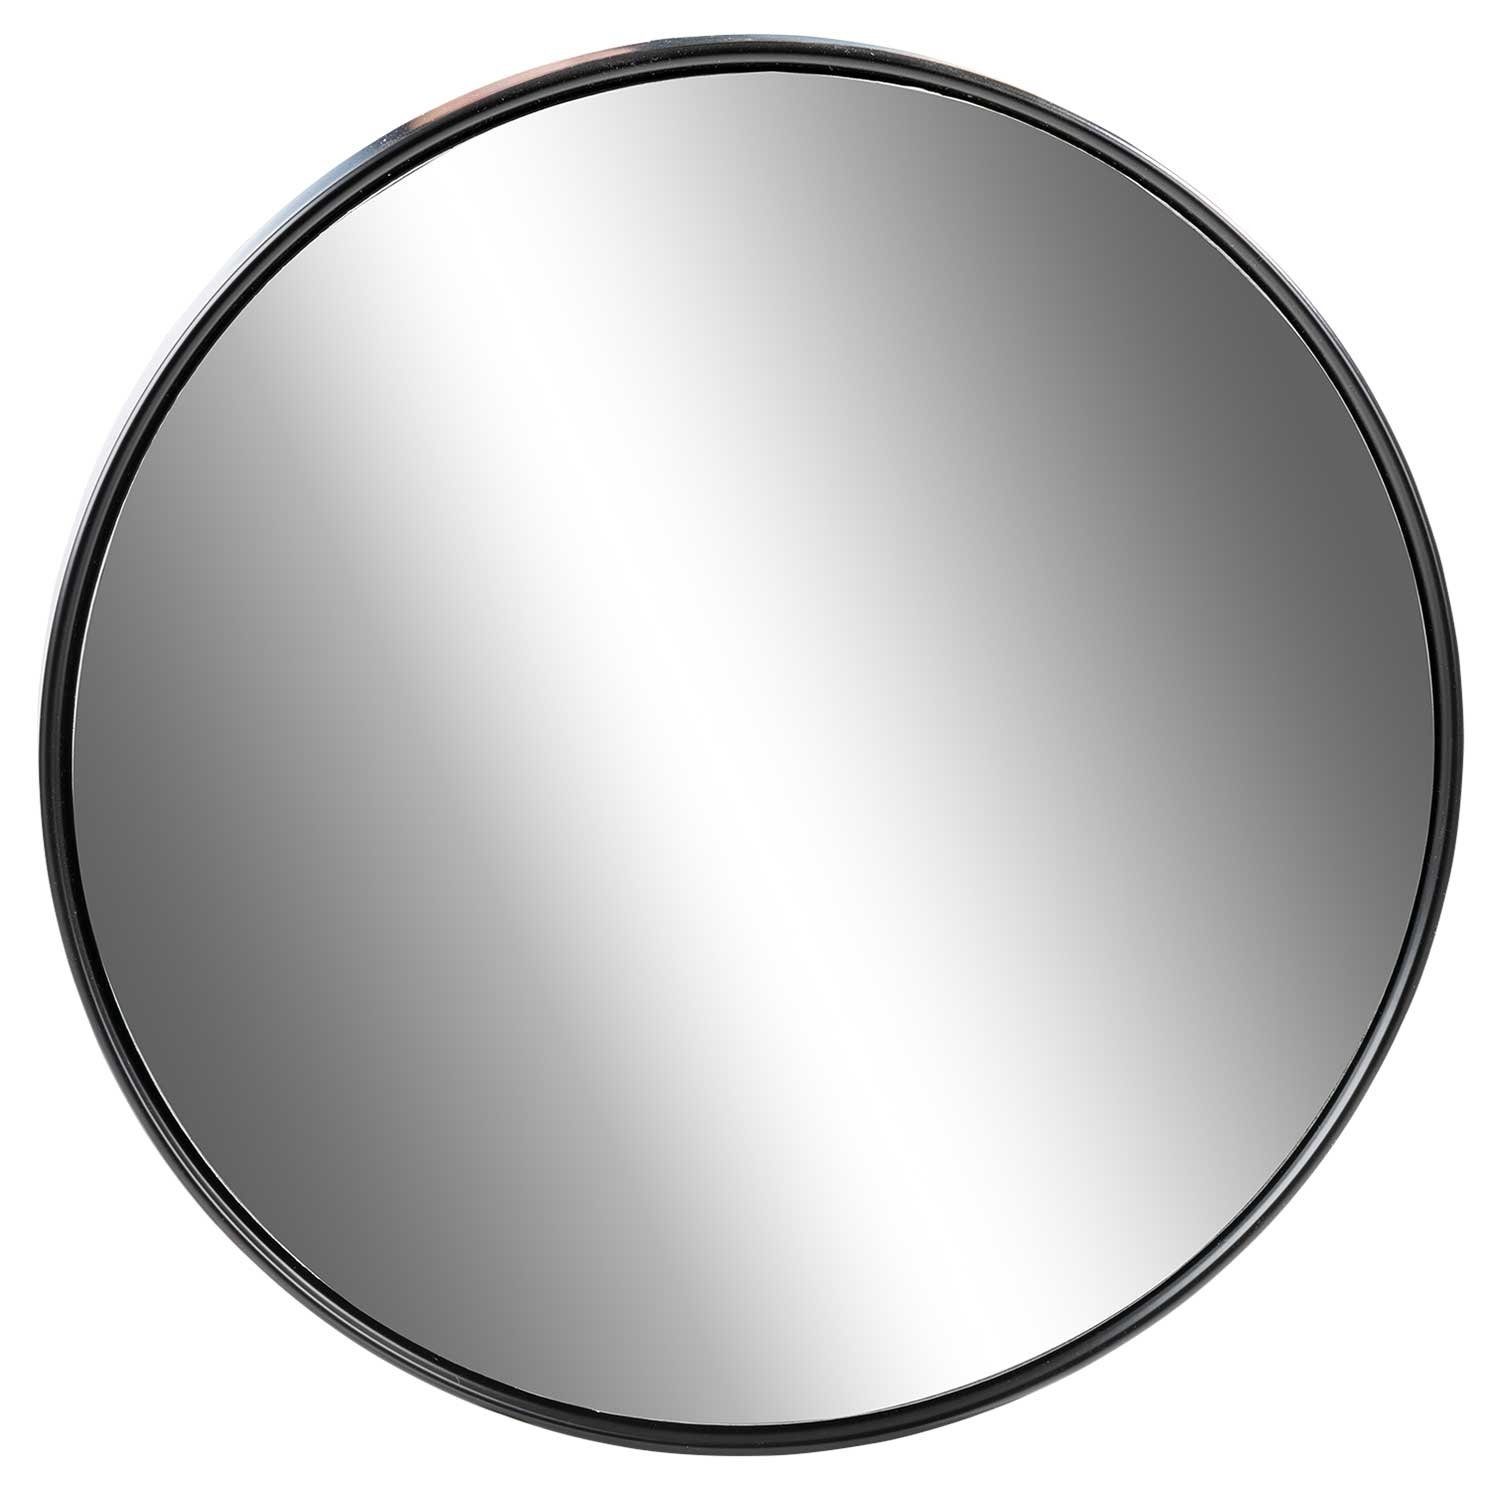 60 Ø Metall, Spiegel Schwarz, in TAINA, lackierte Rahmenoberfläche cm, Home4You Rahmen